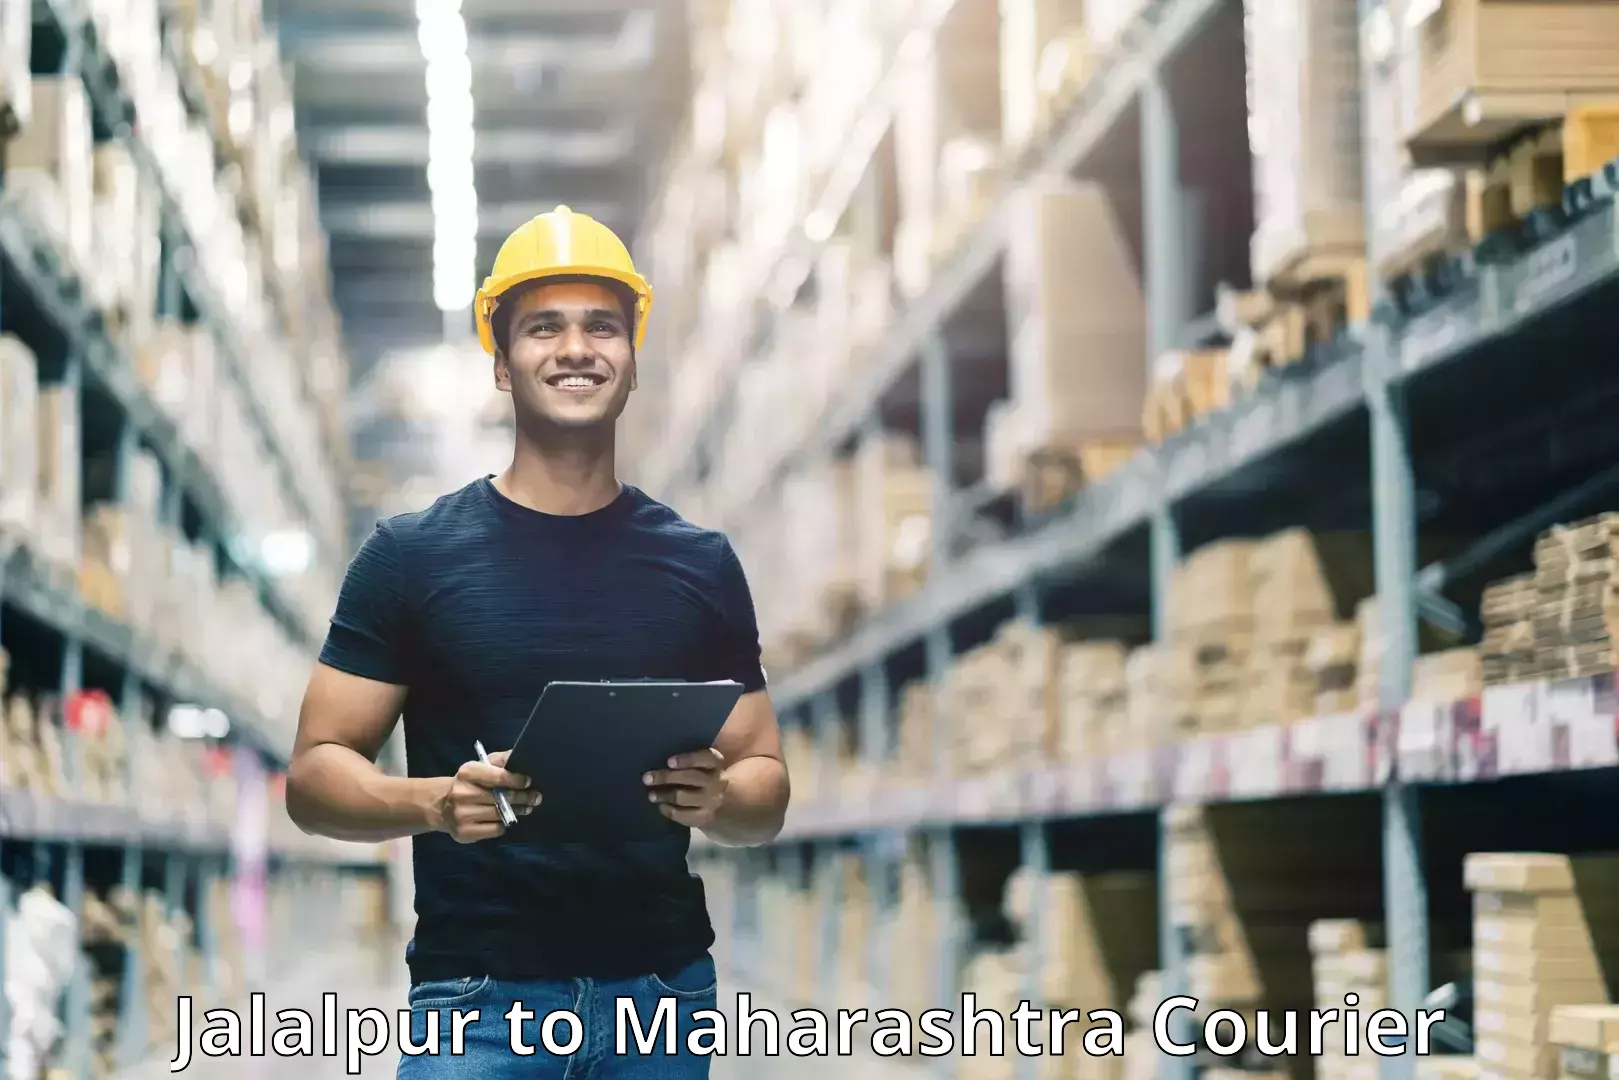 Courier service efficiency Jalalpur to Maharashtra